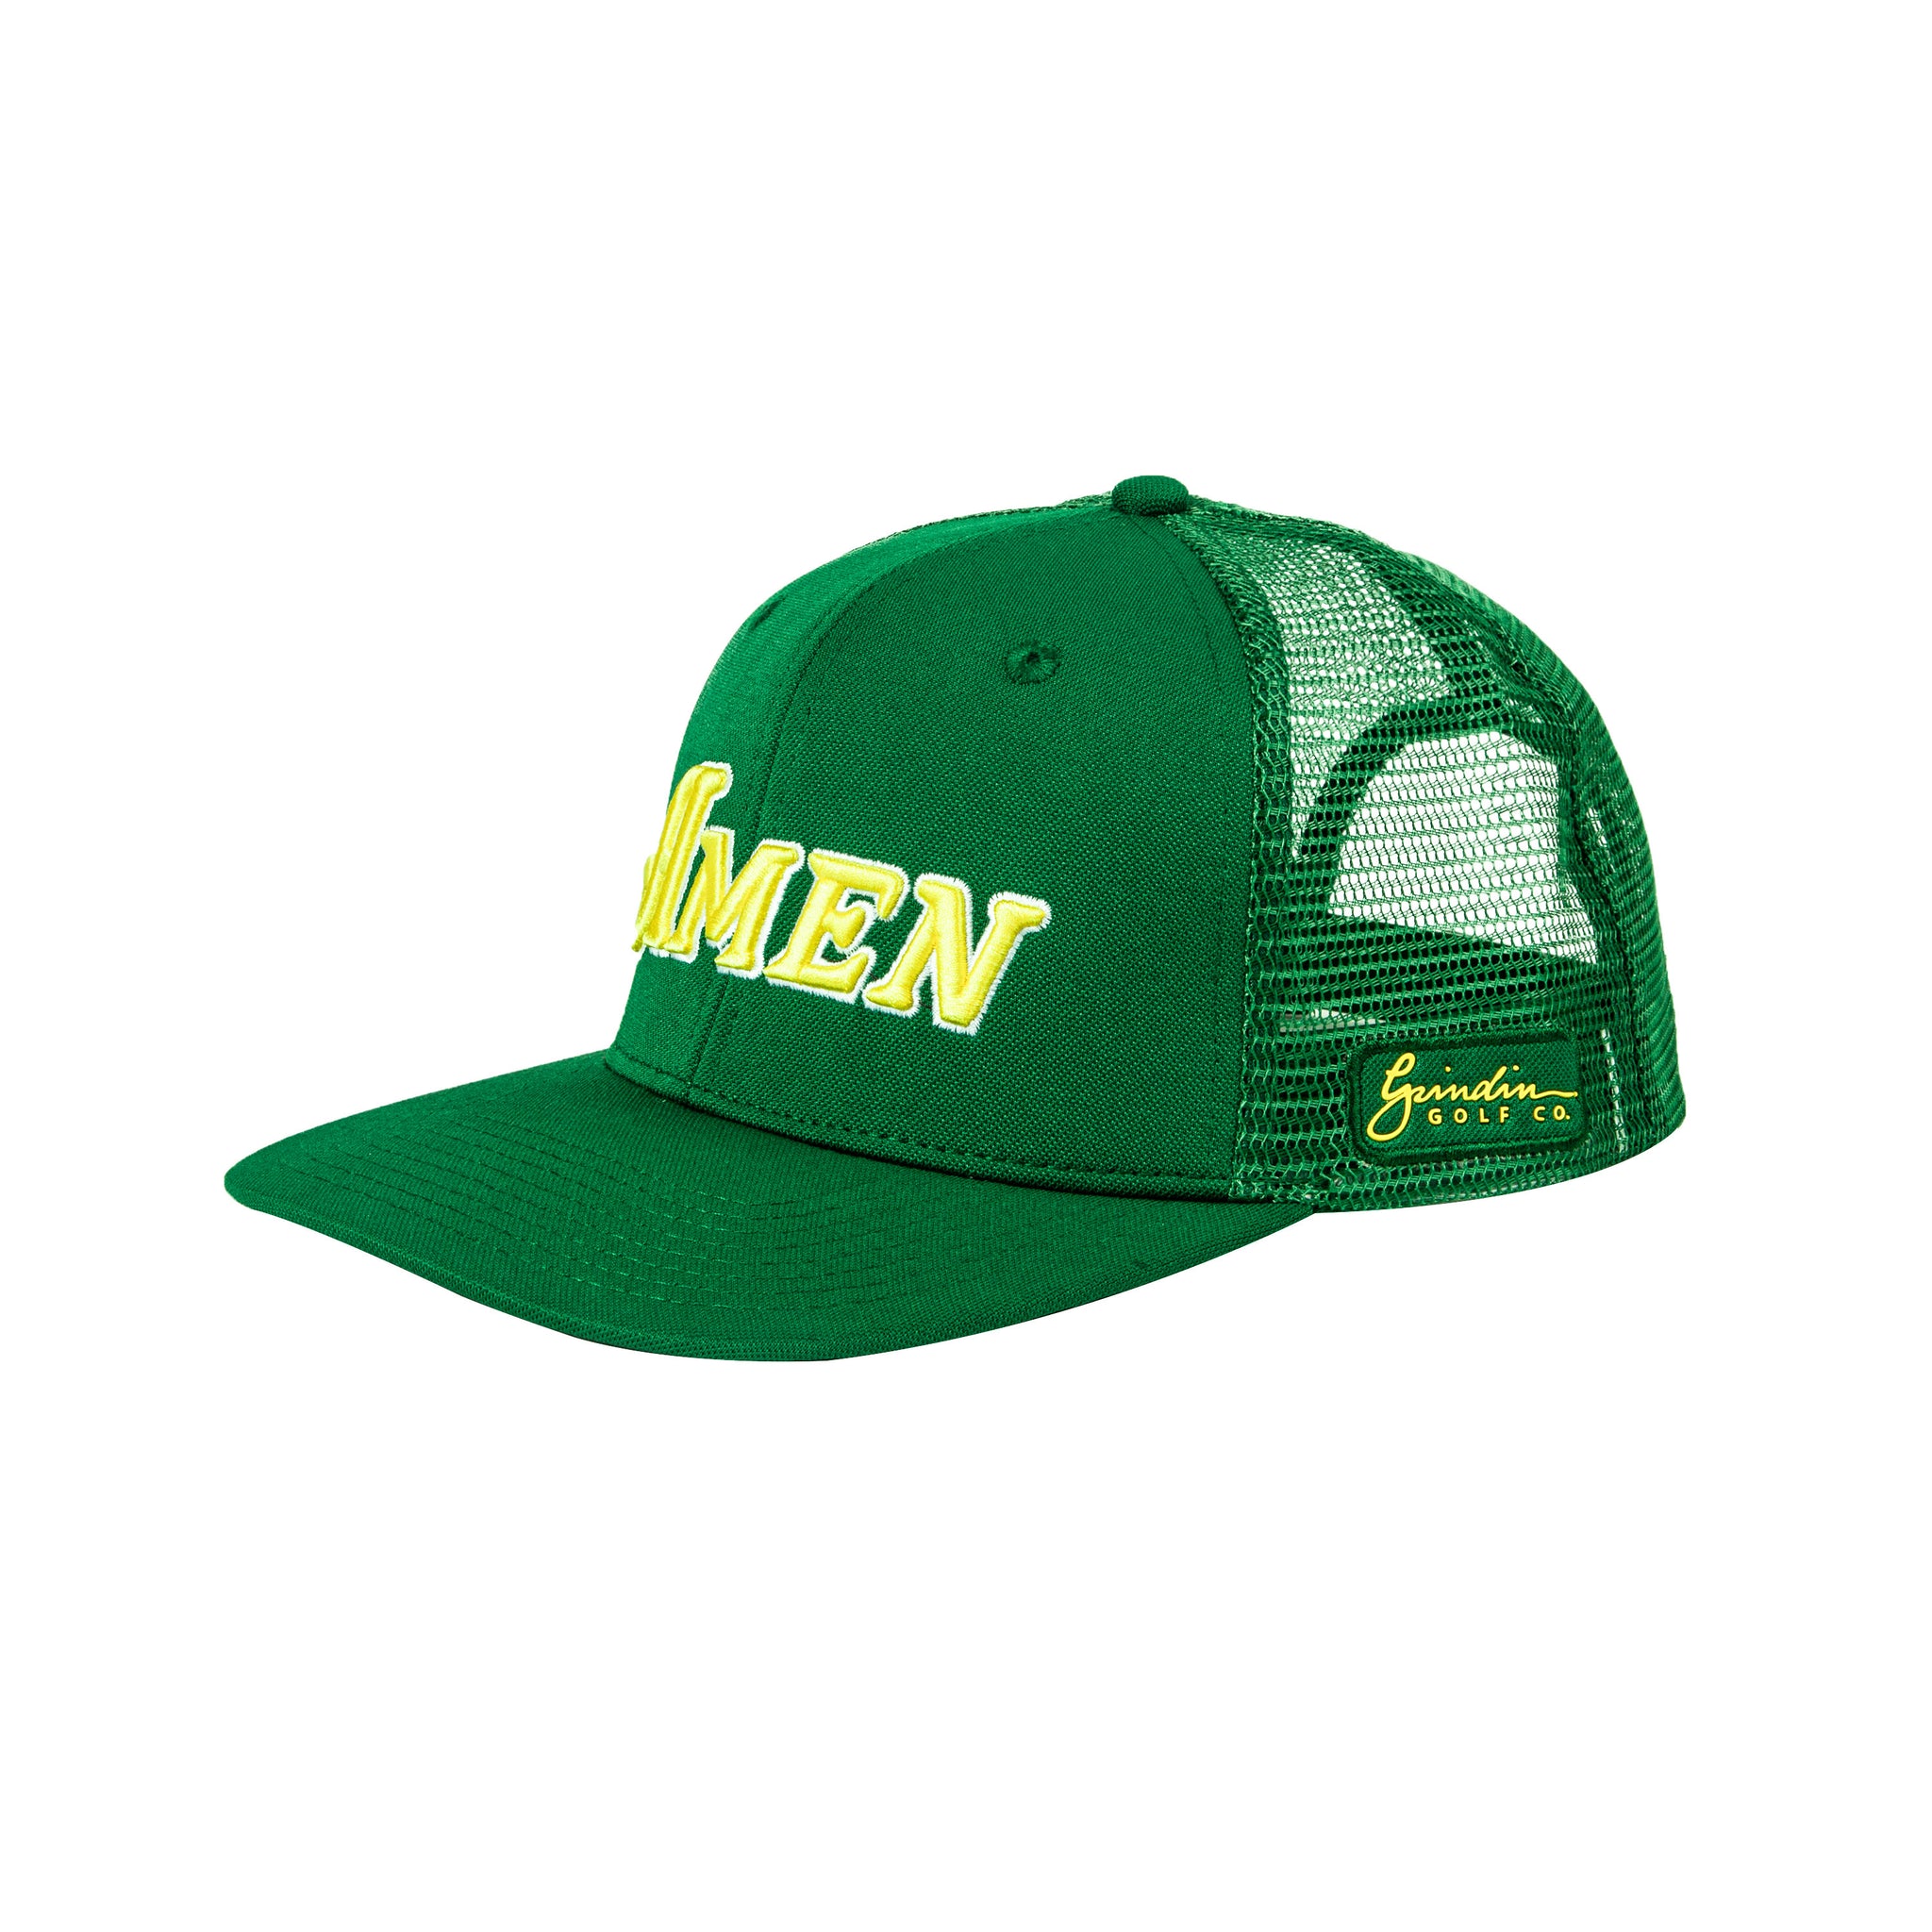 Green Flat Bill Amen Mesh Hat